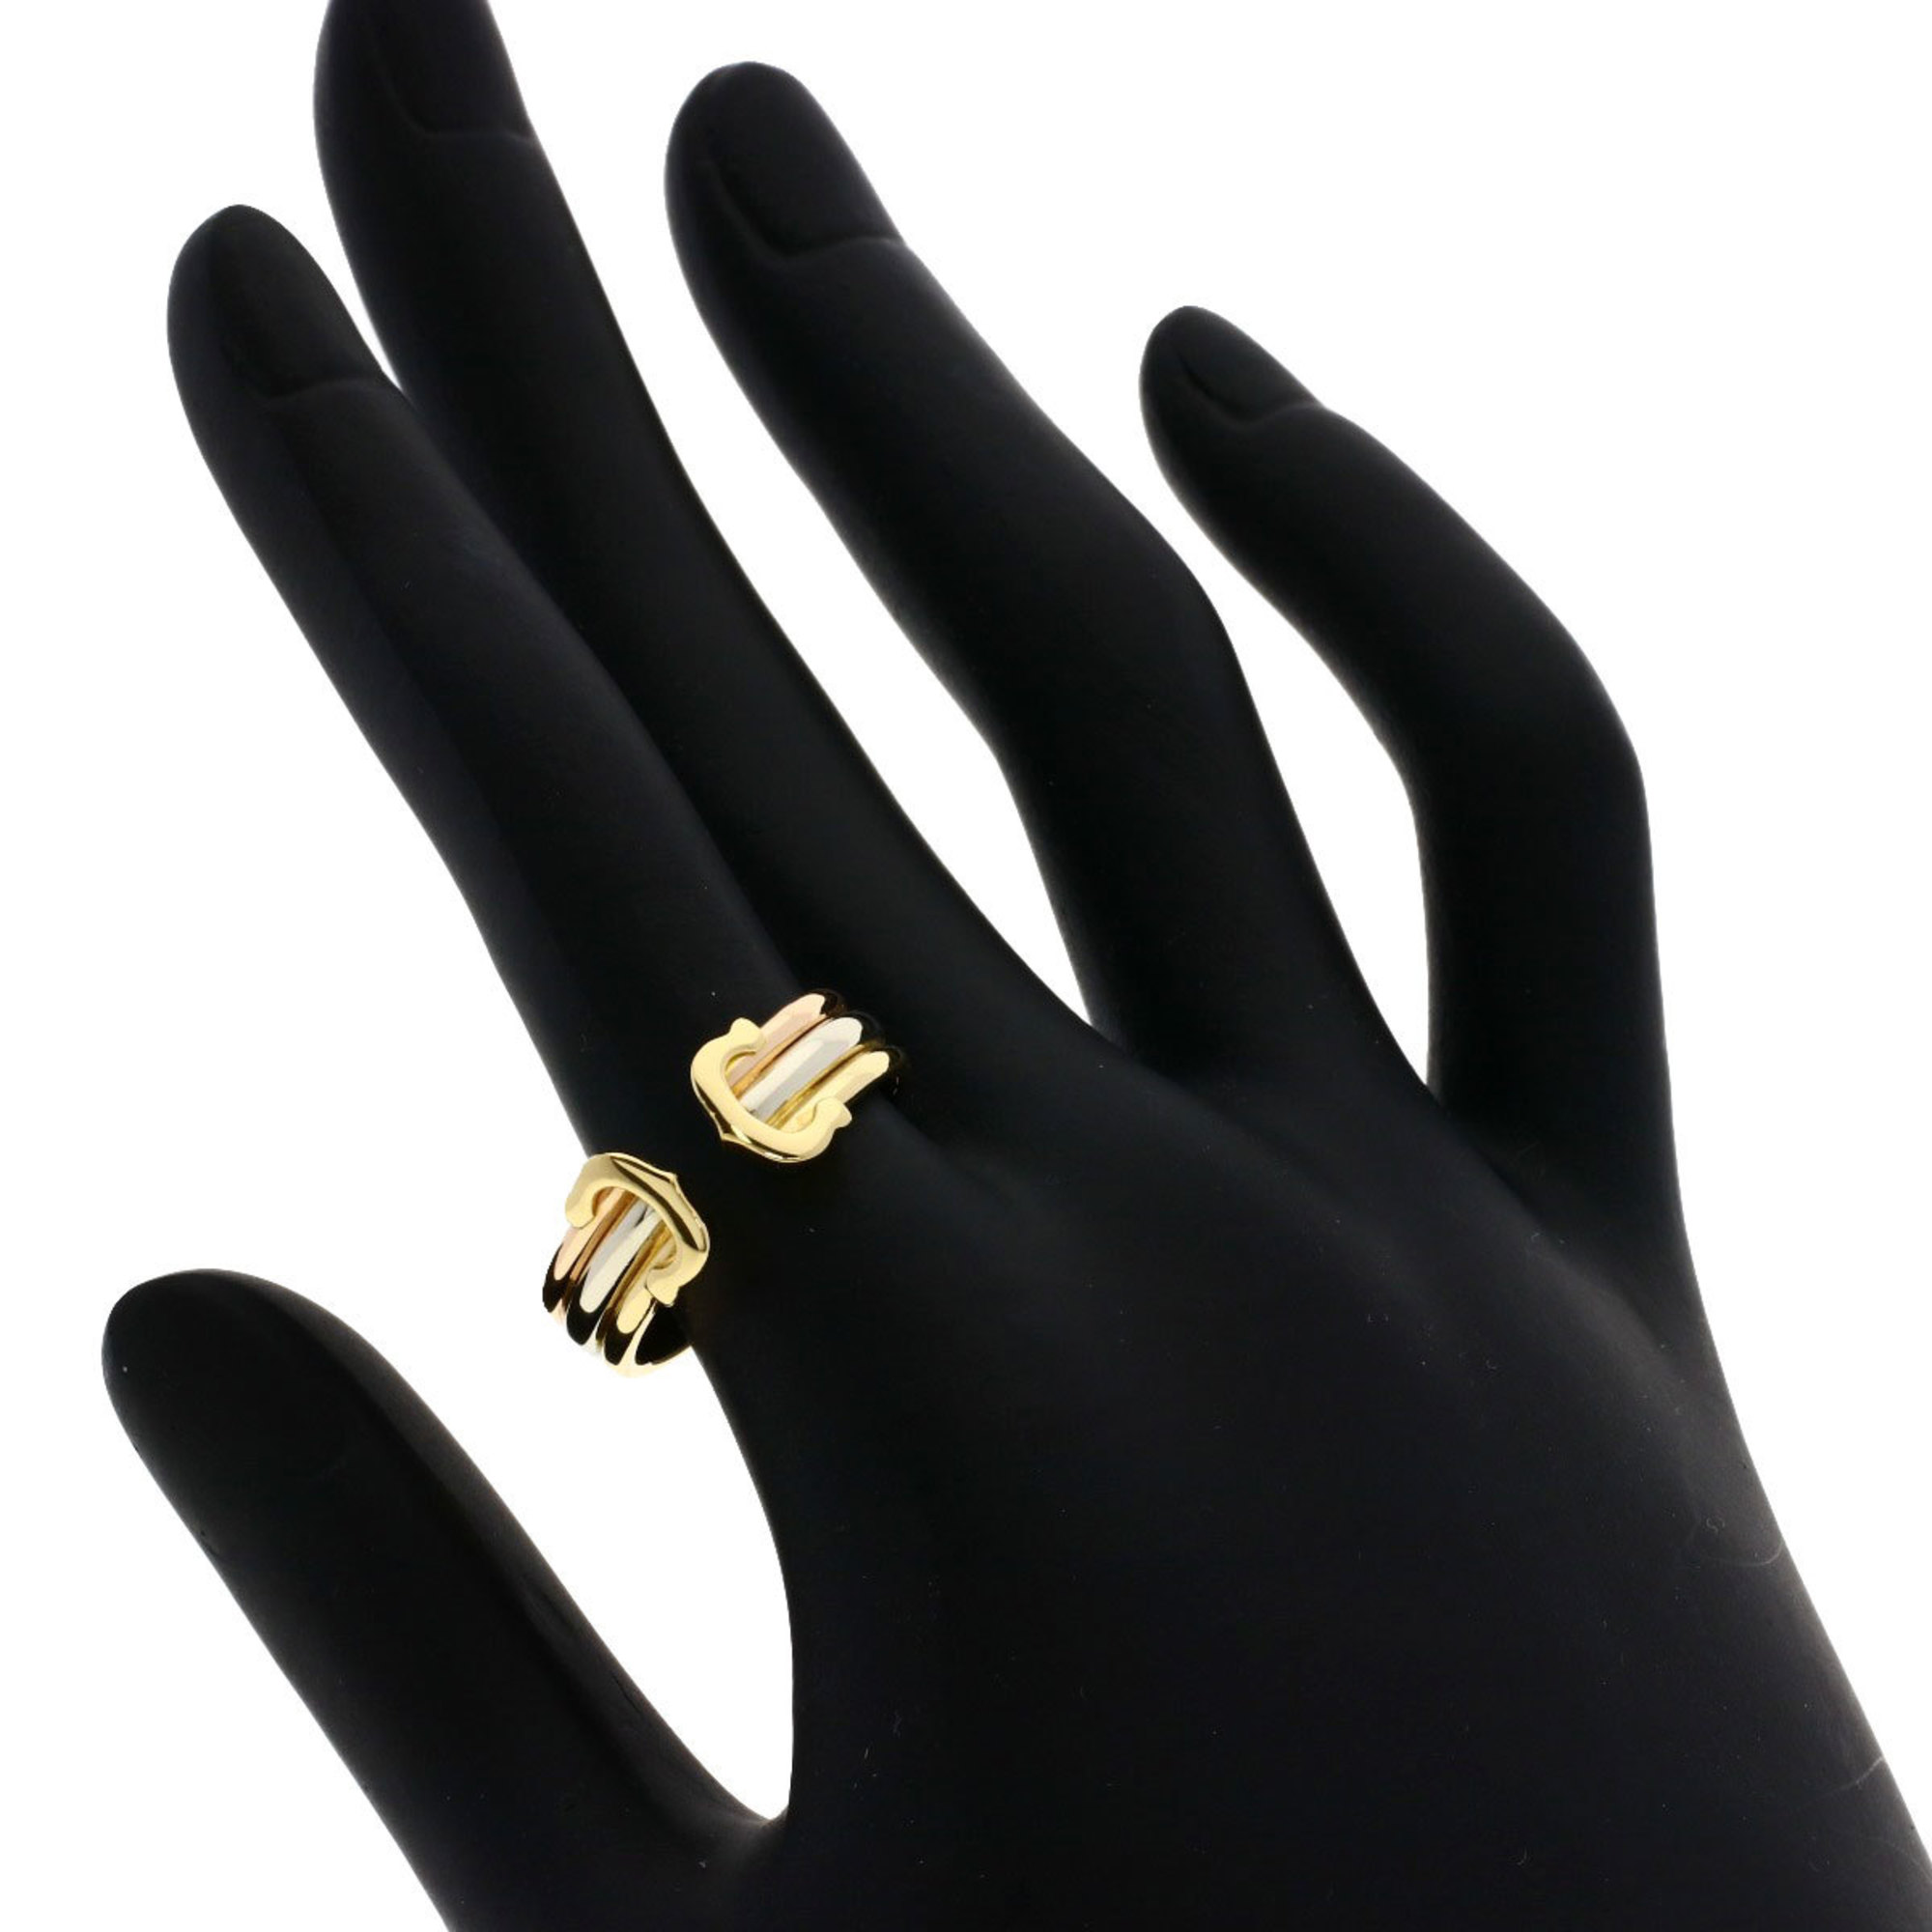 Cartier 2C Ring #55 Ring, K18 Yellow Gold, K18WG, K18PG, Women's